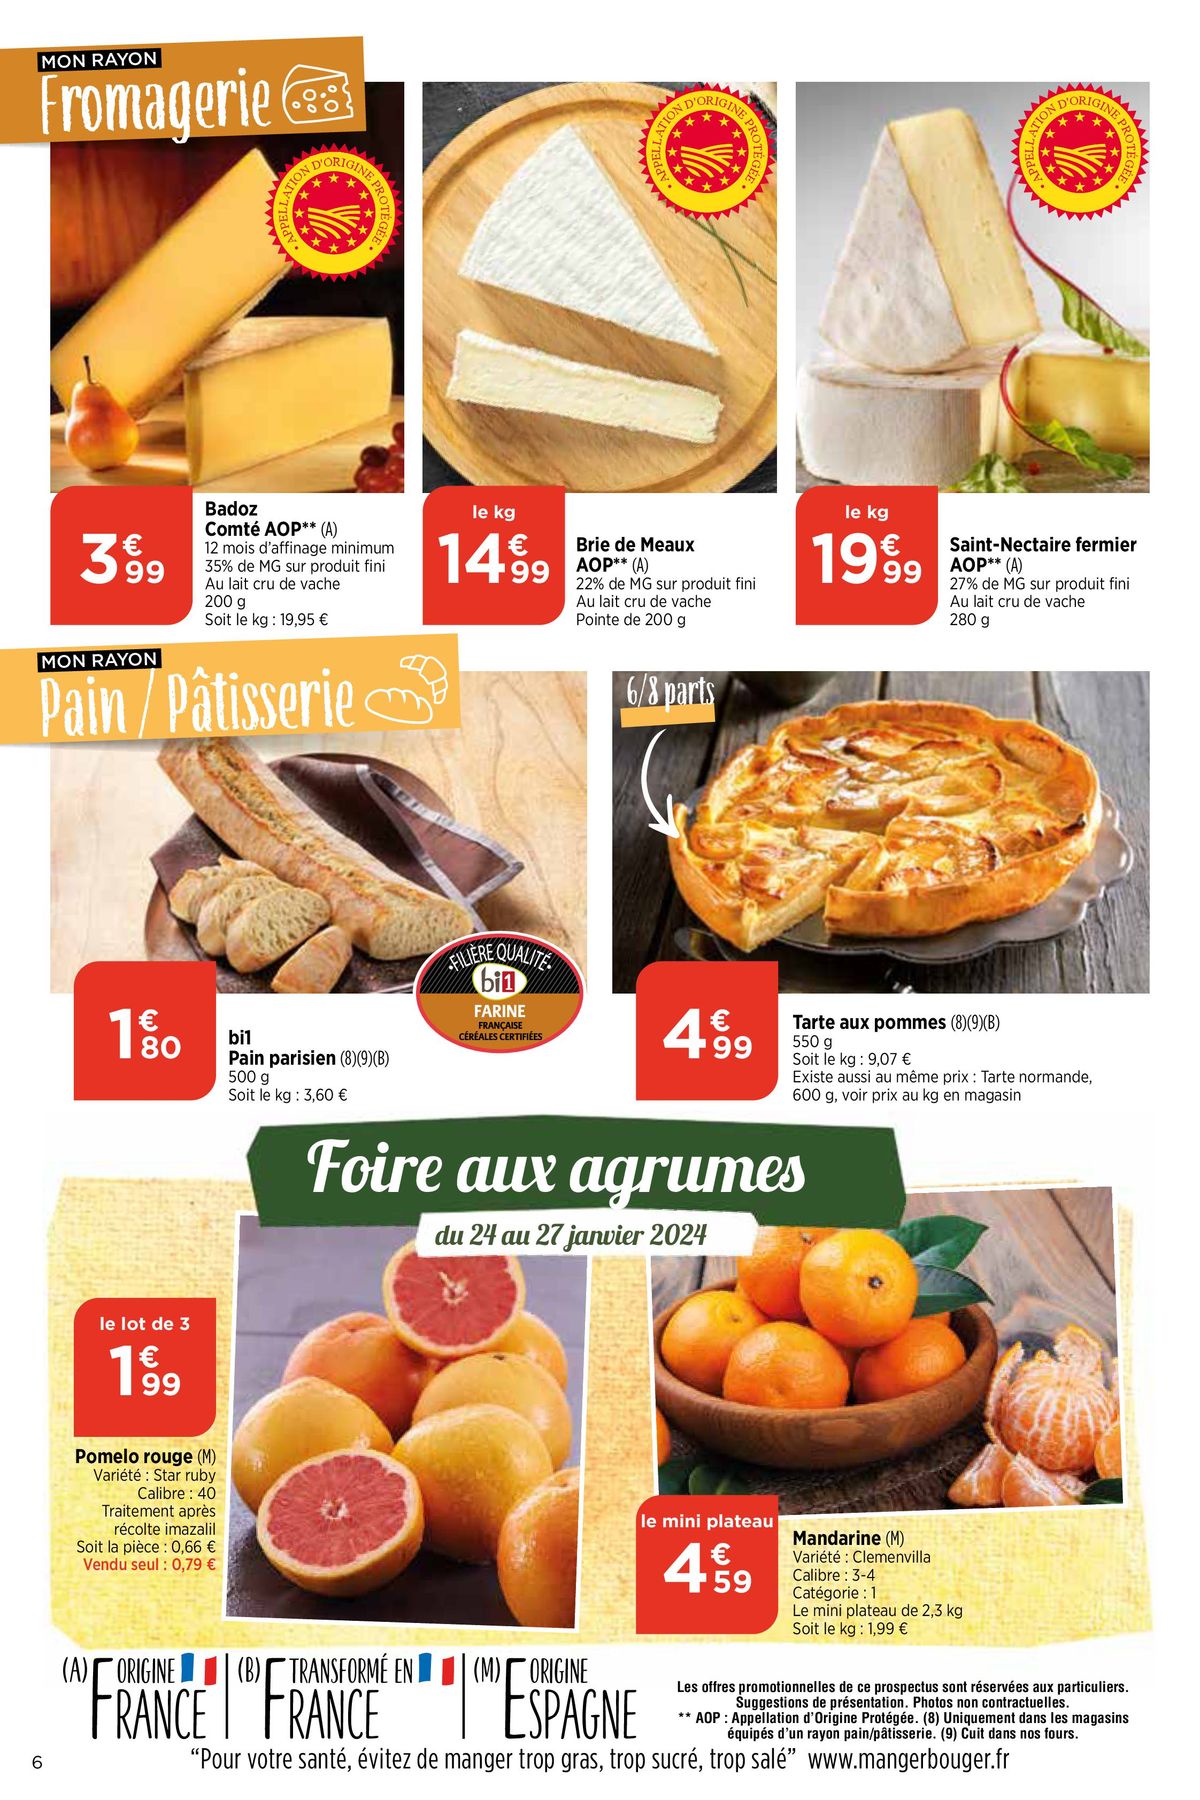 Catalogue Un excellent filet Mignon, page 00006